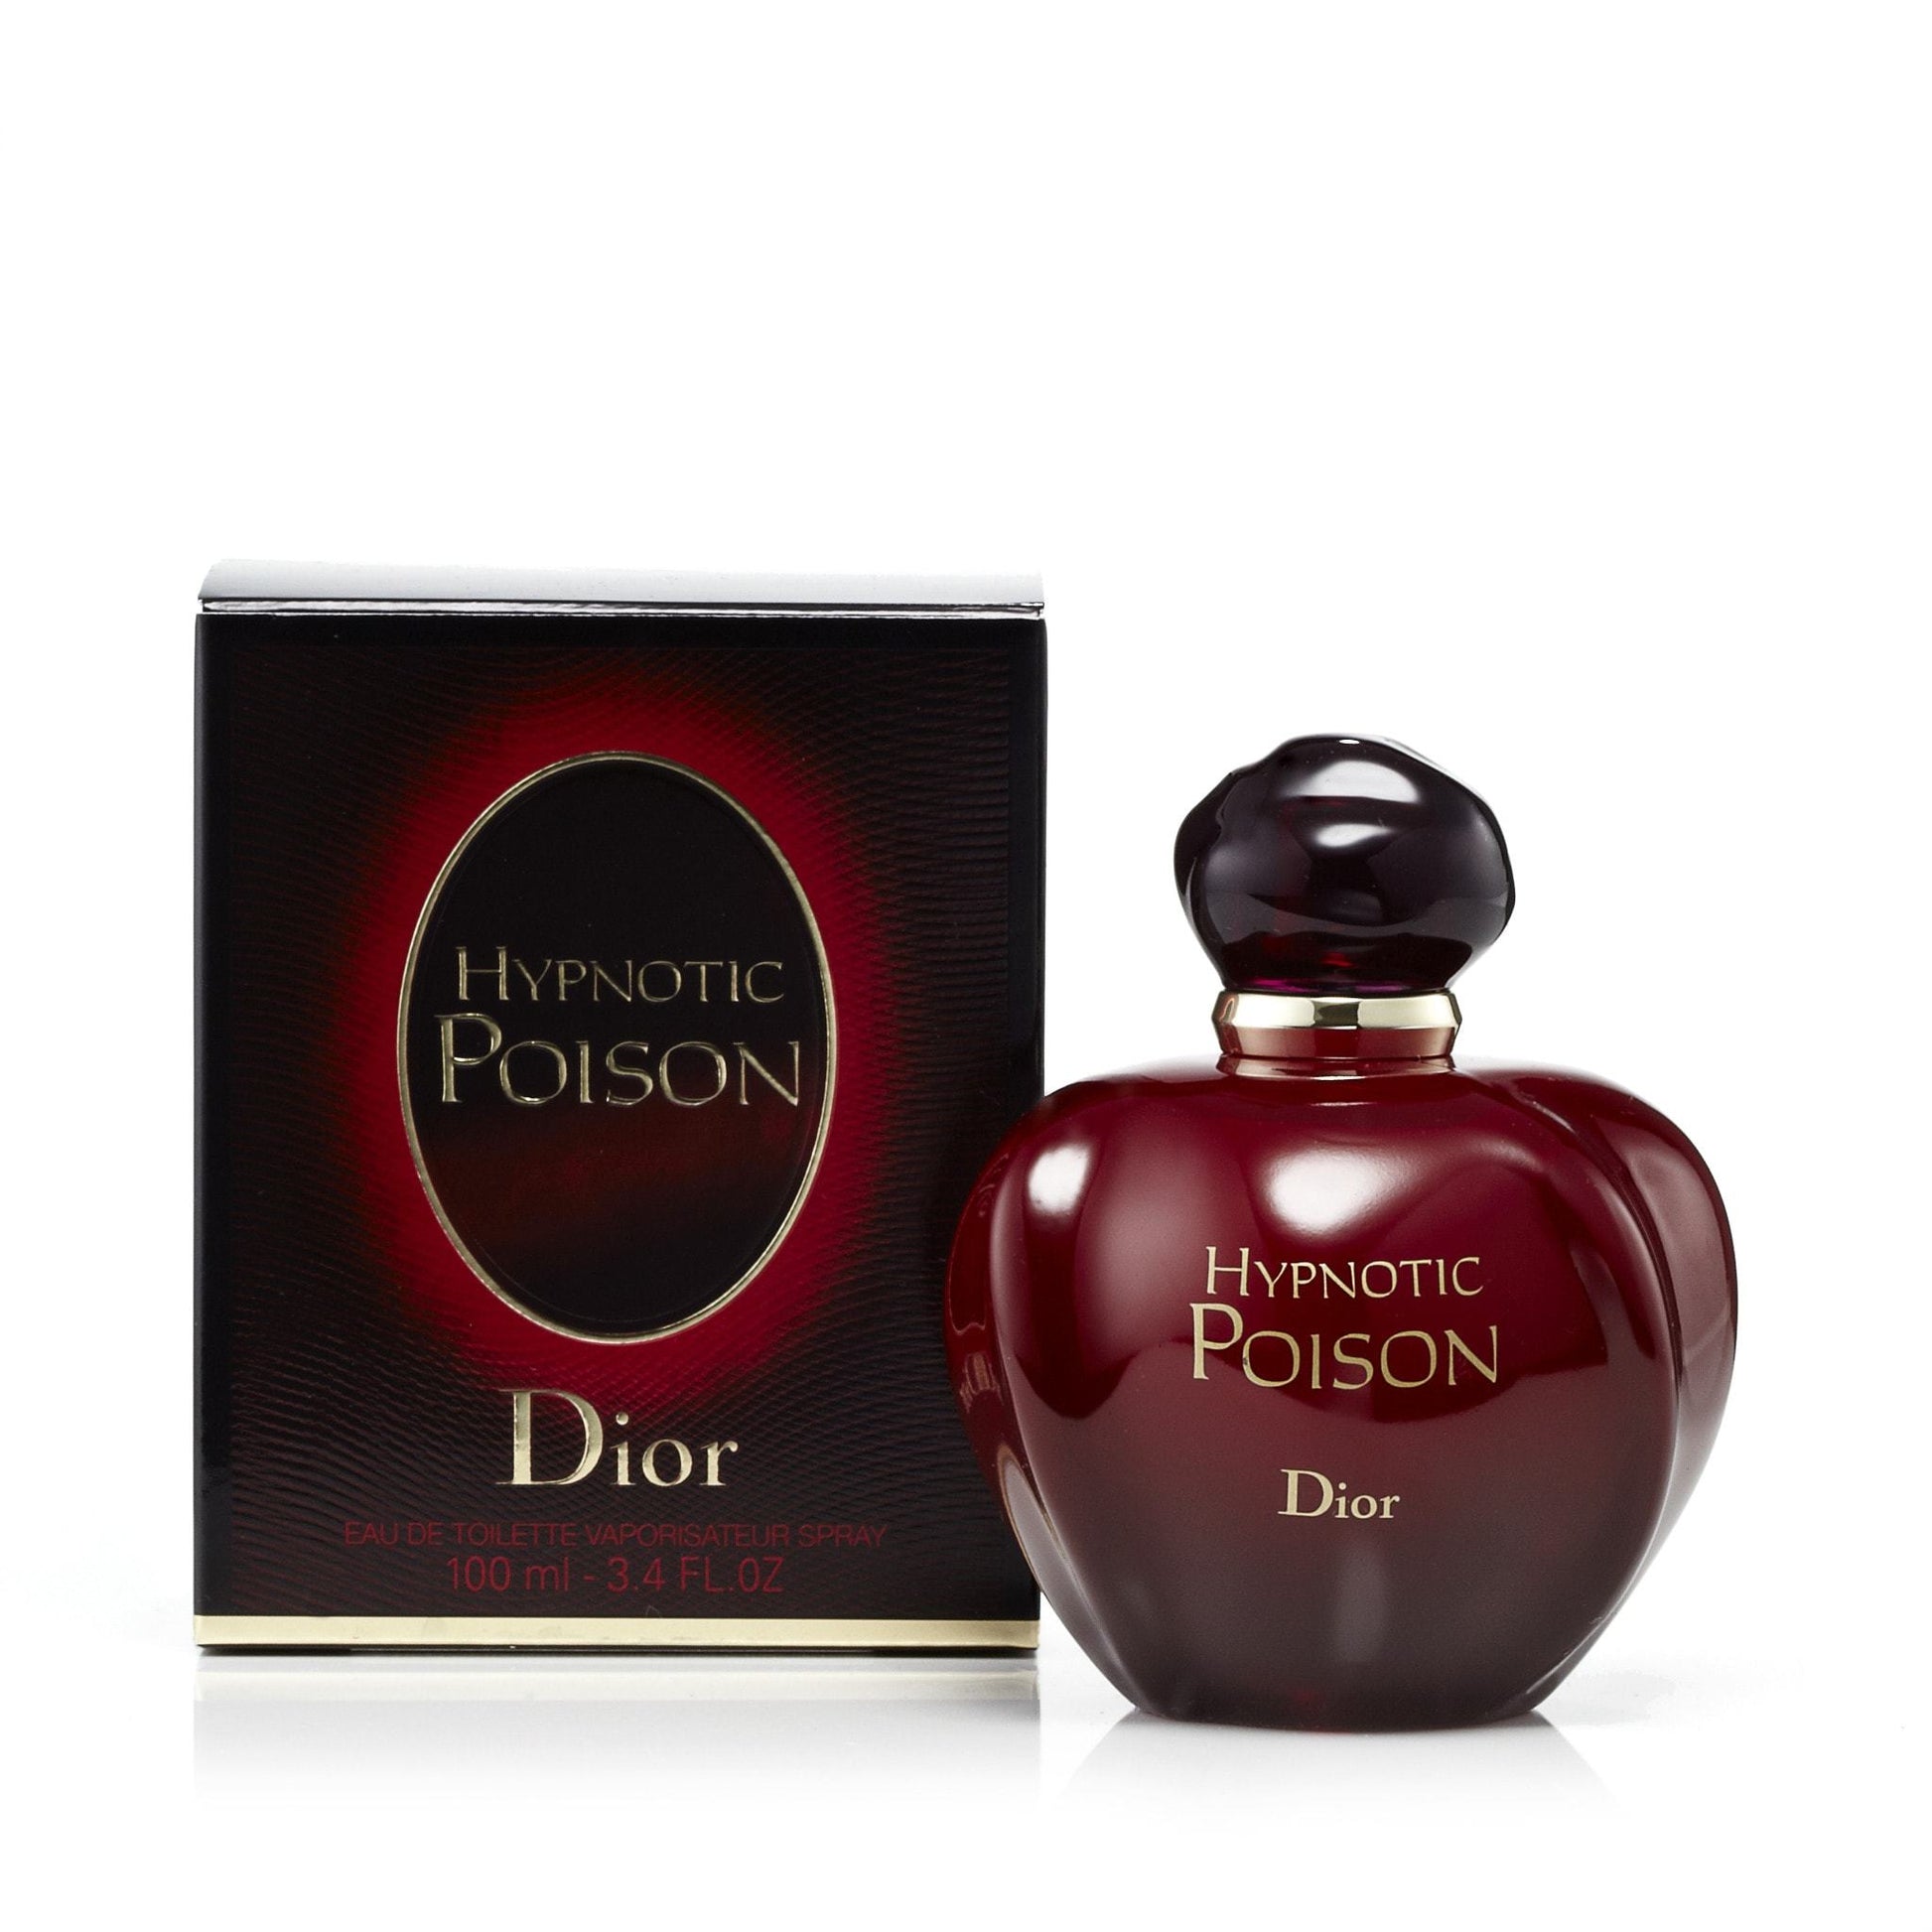 Hypnotic Poison Eau de Toilette Spray for Women by Dior, Product image 1